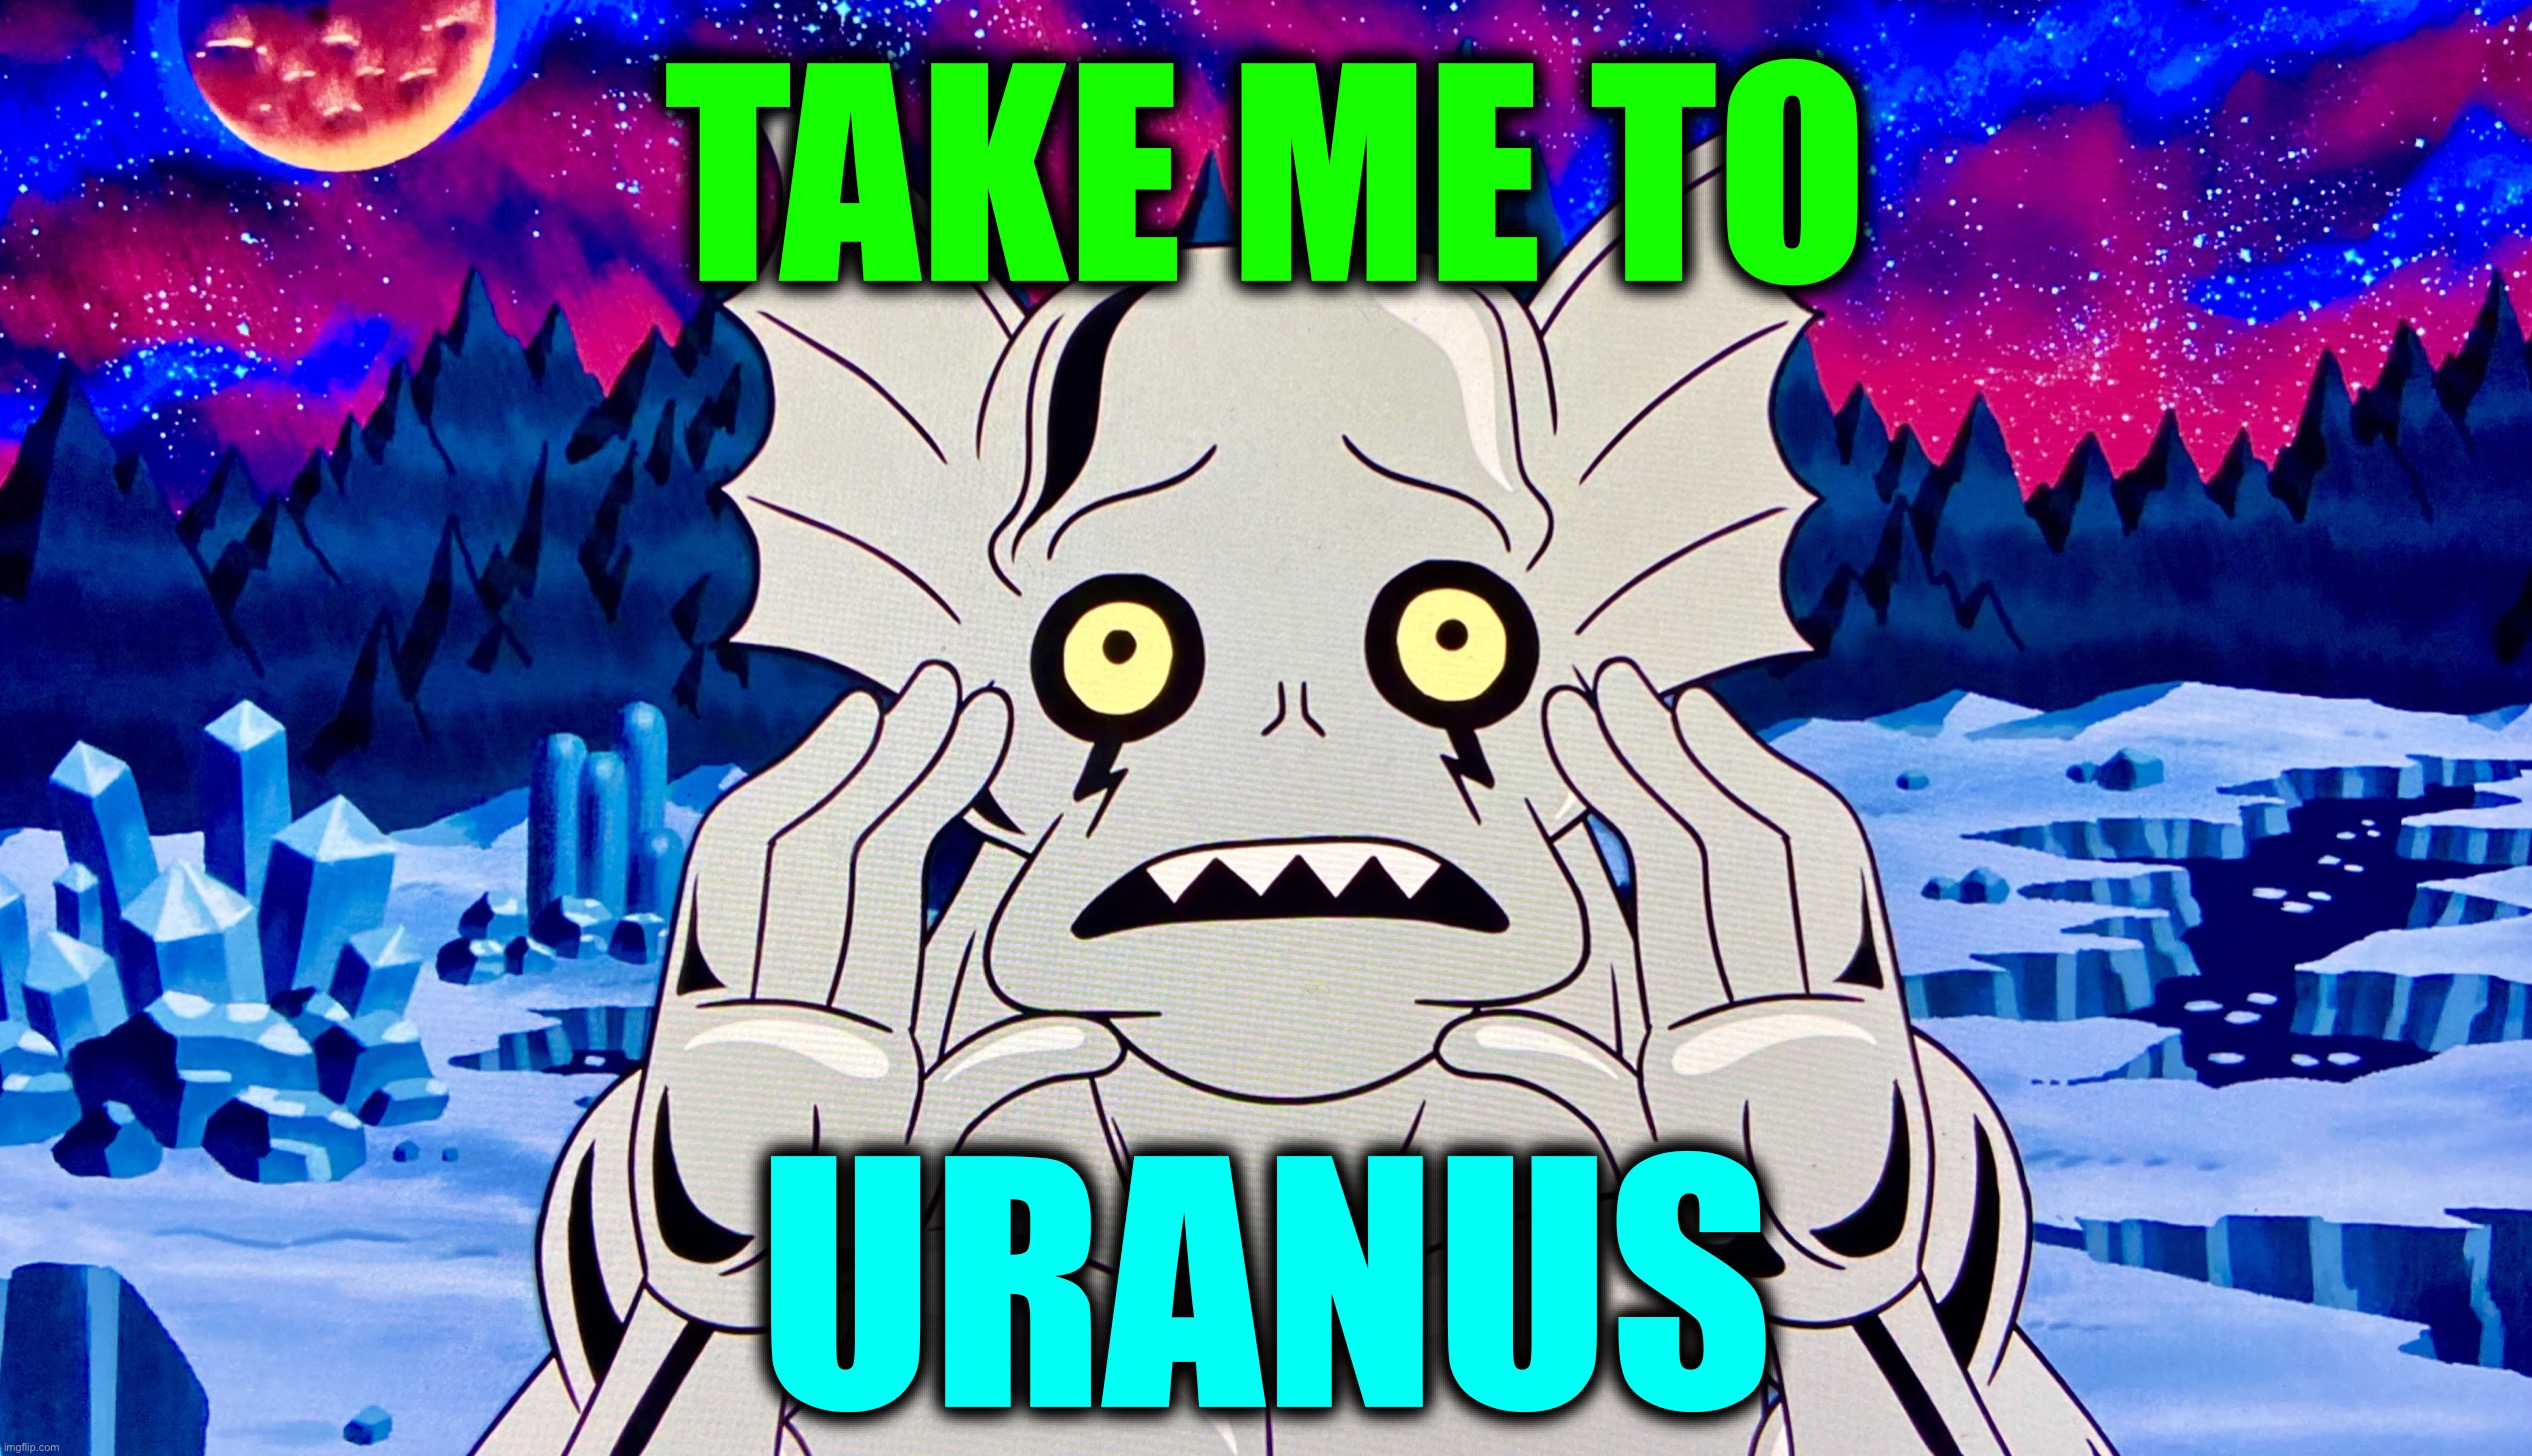 Alien Hitchhiker | TAKE ME TO; URANUS | image tagged in alien,hitchhiker,memes,planets,uranus | made w/ Imgflip meme maker